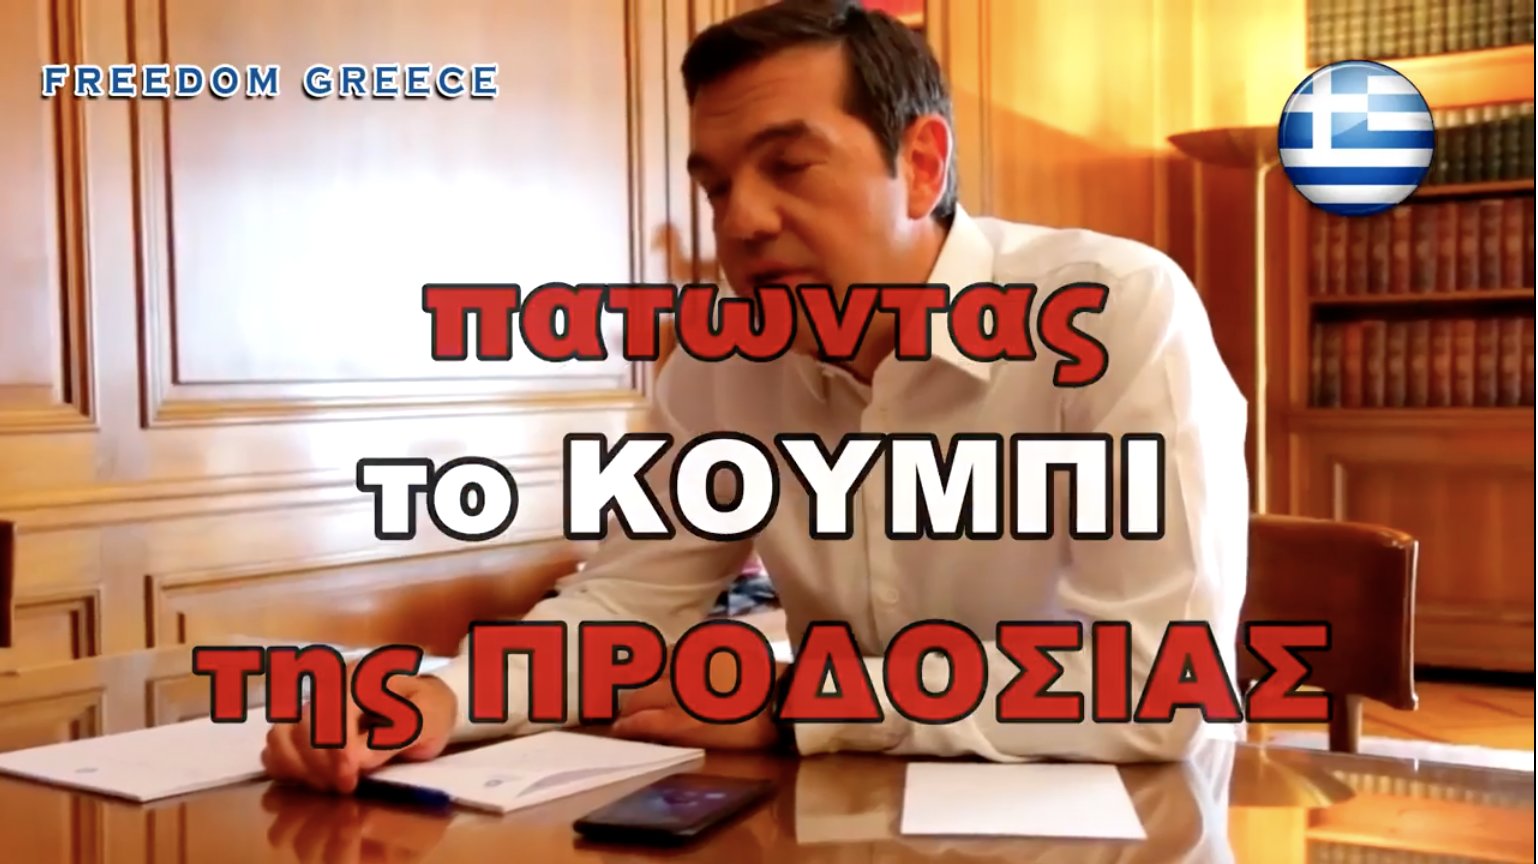 Το απίστευτο βίντεο του Τσίπρα με τον Ζάεφ παραγωγής ΣΥΡΙΖΑ !!! 🇬🇷✌️ Η ΠΡΟΔΟΣΙΑ δεν θα περάσει 🇬🇷✌️